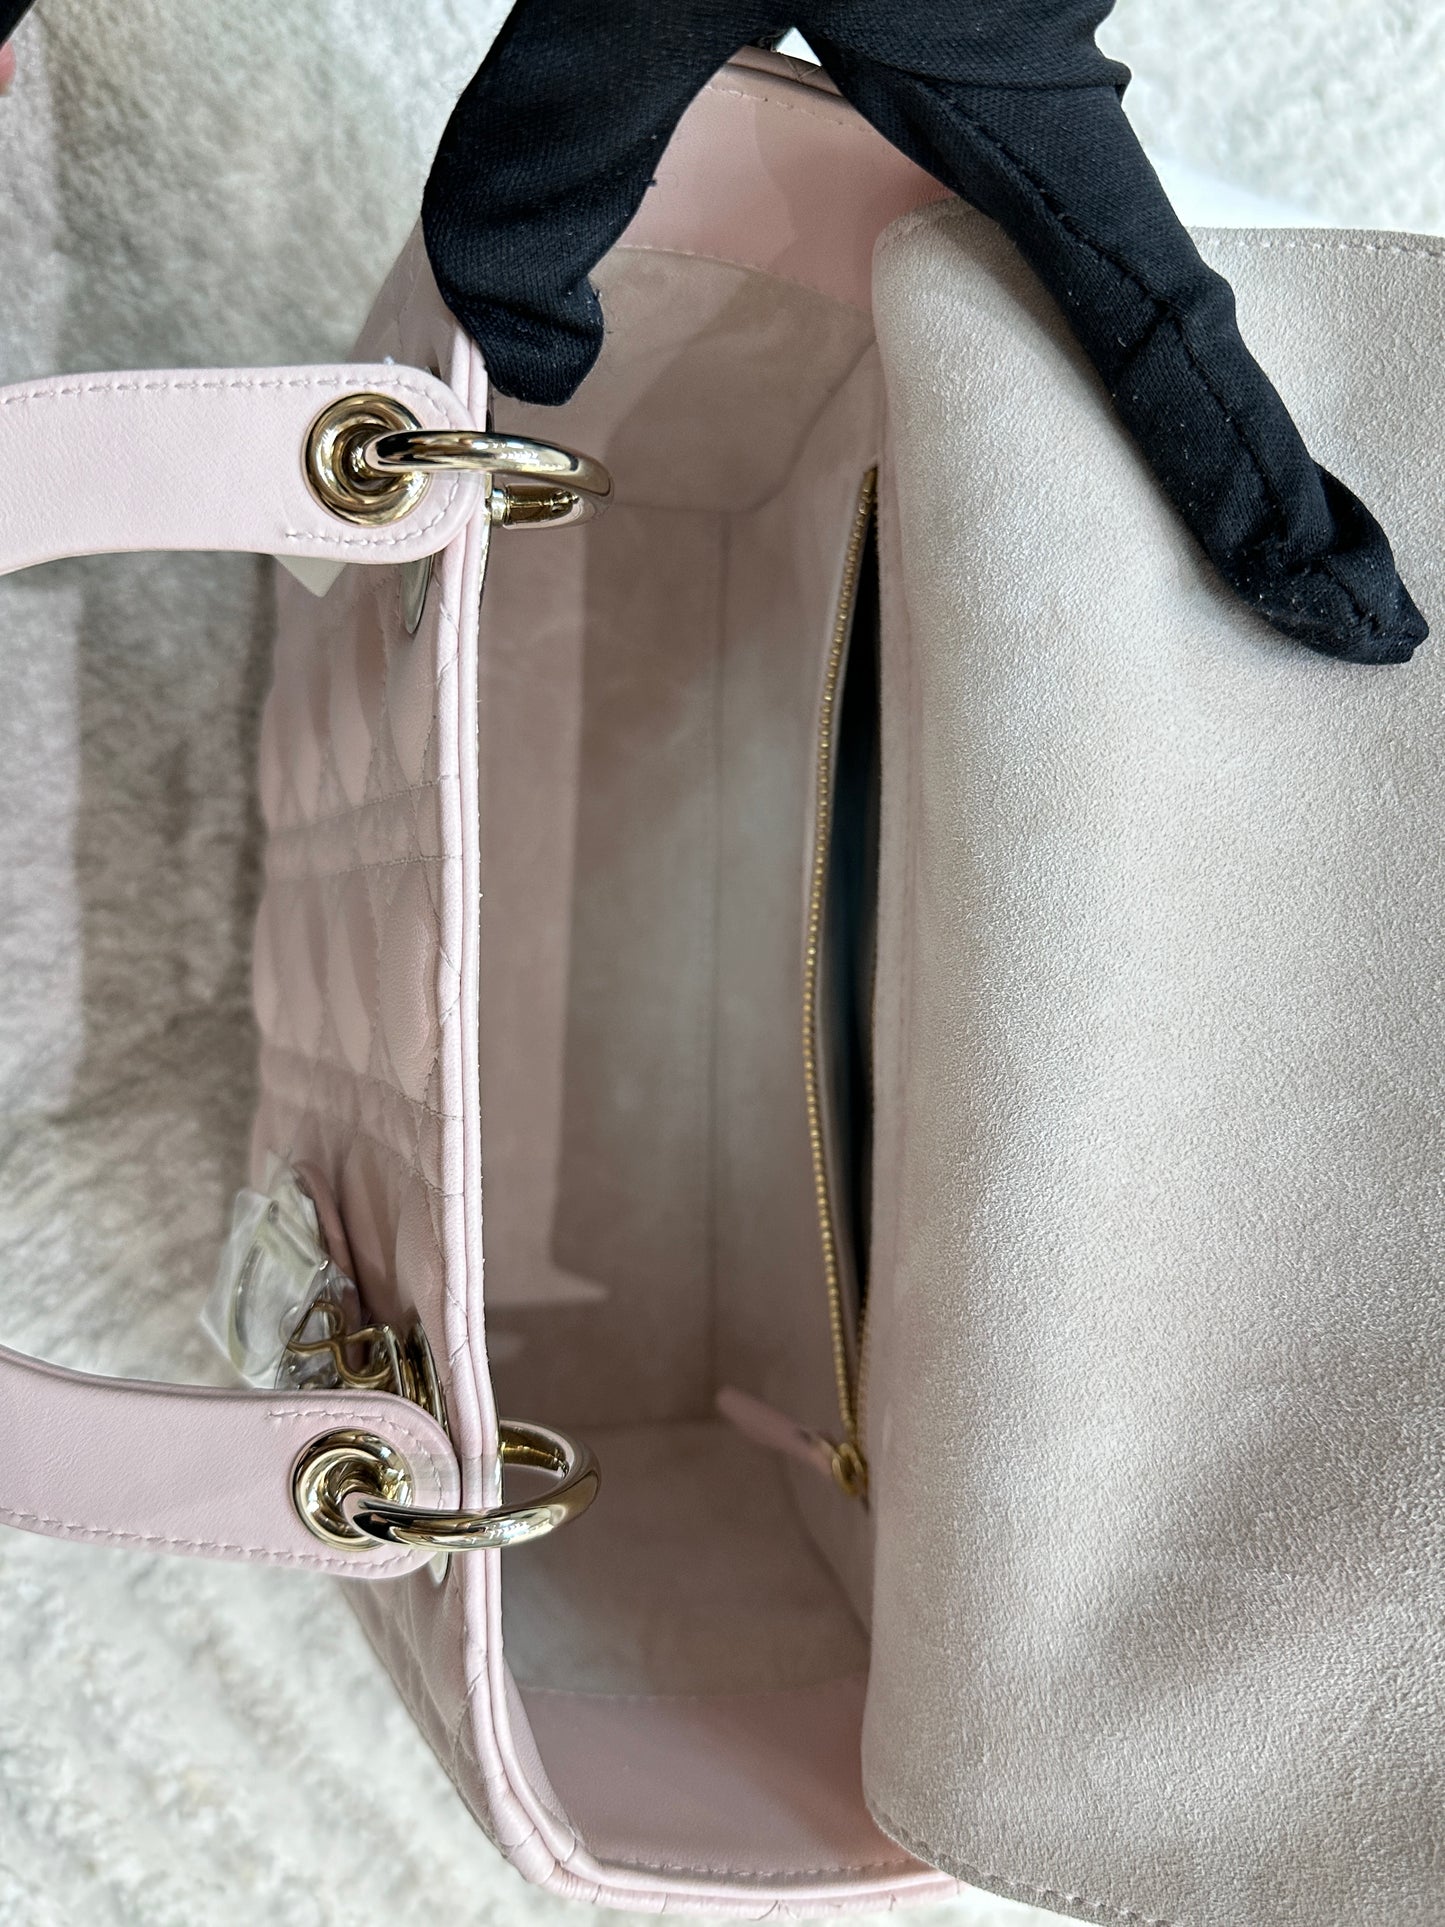 My Lady Medium Lady Dior Bag Pink Cannage Lambskin Flap Bag